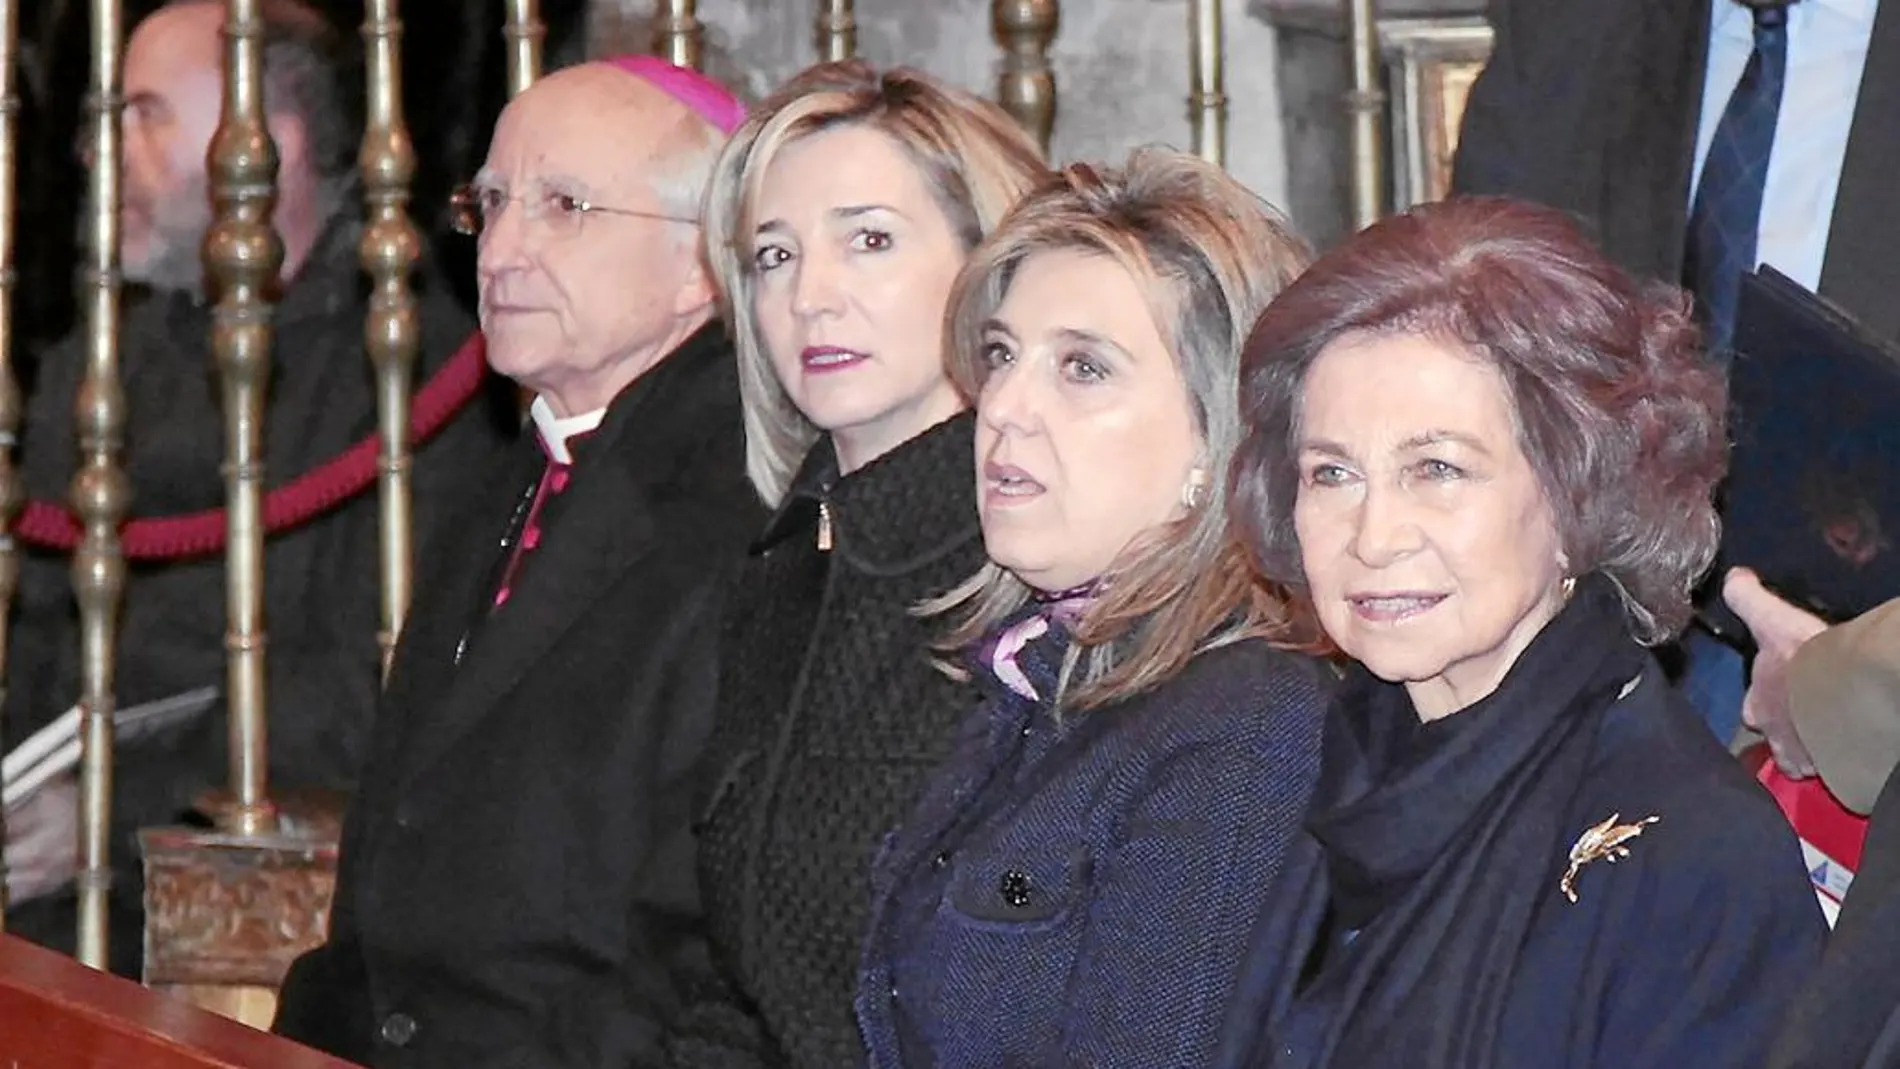 Doña Sofía, María José Salgueiro, Alicia García y García Burillo, escuchan el concierto